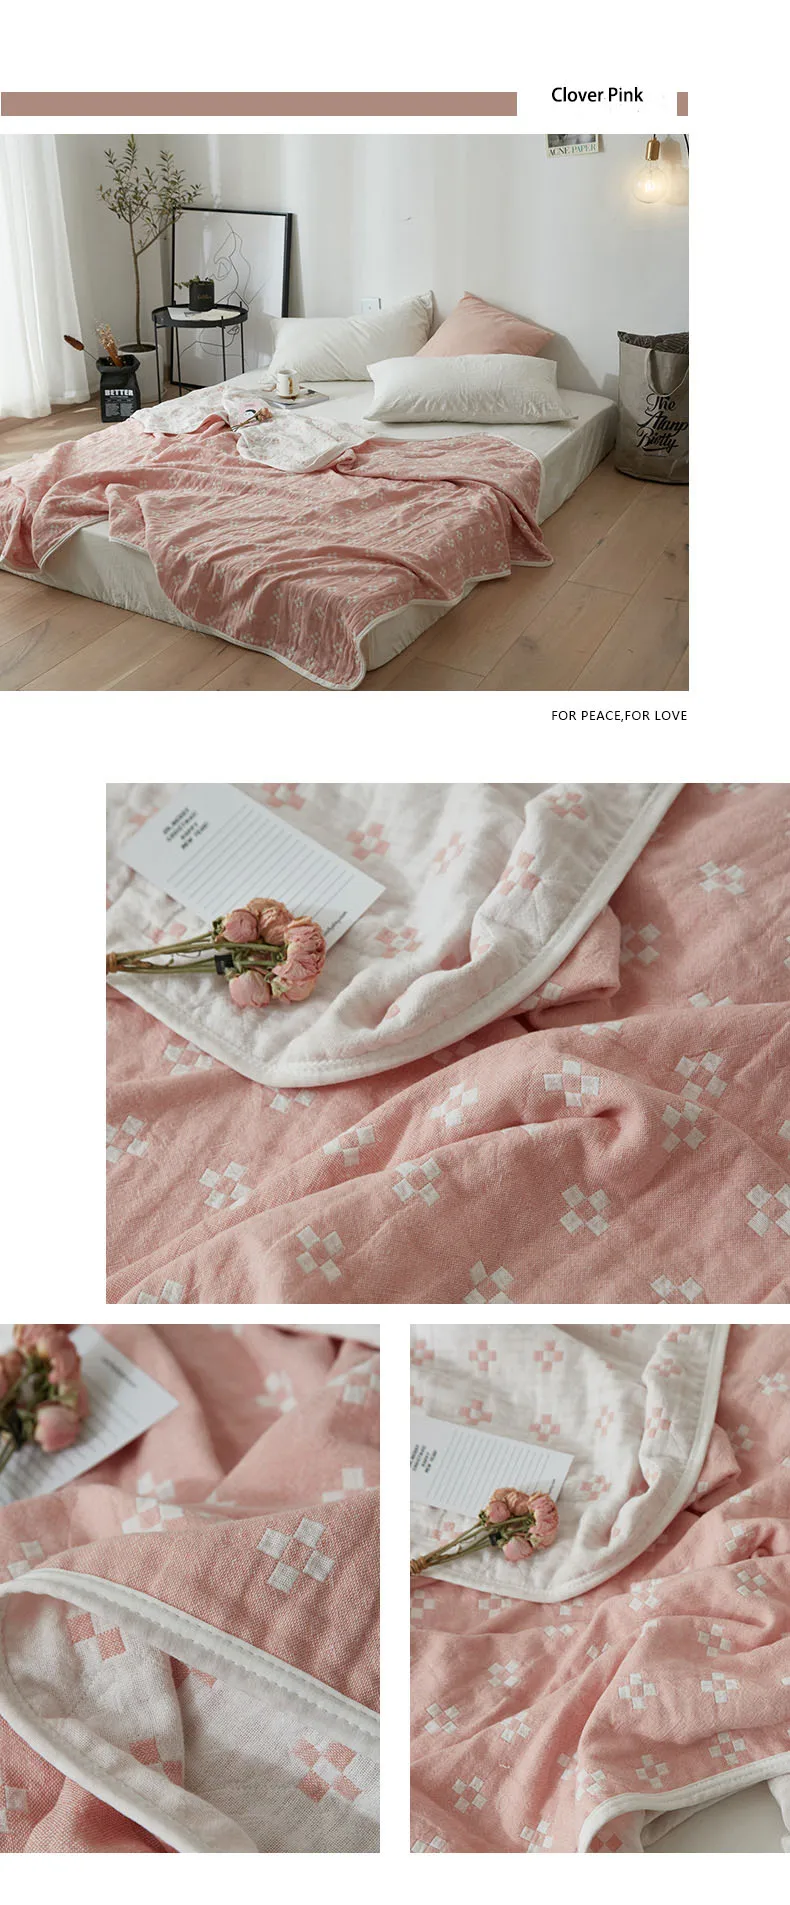 Летнее одеяло хлопок пряжа ткань плед для кровати диван самолет мягкий воздухопроницаемый 10 узор Розовый 150/180x220 см